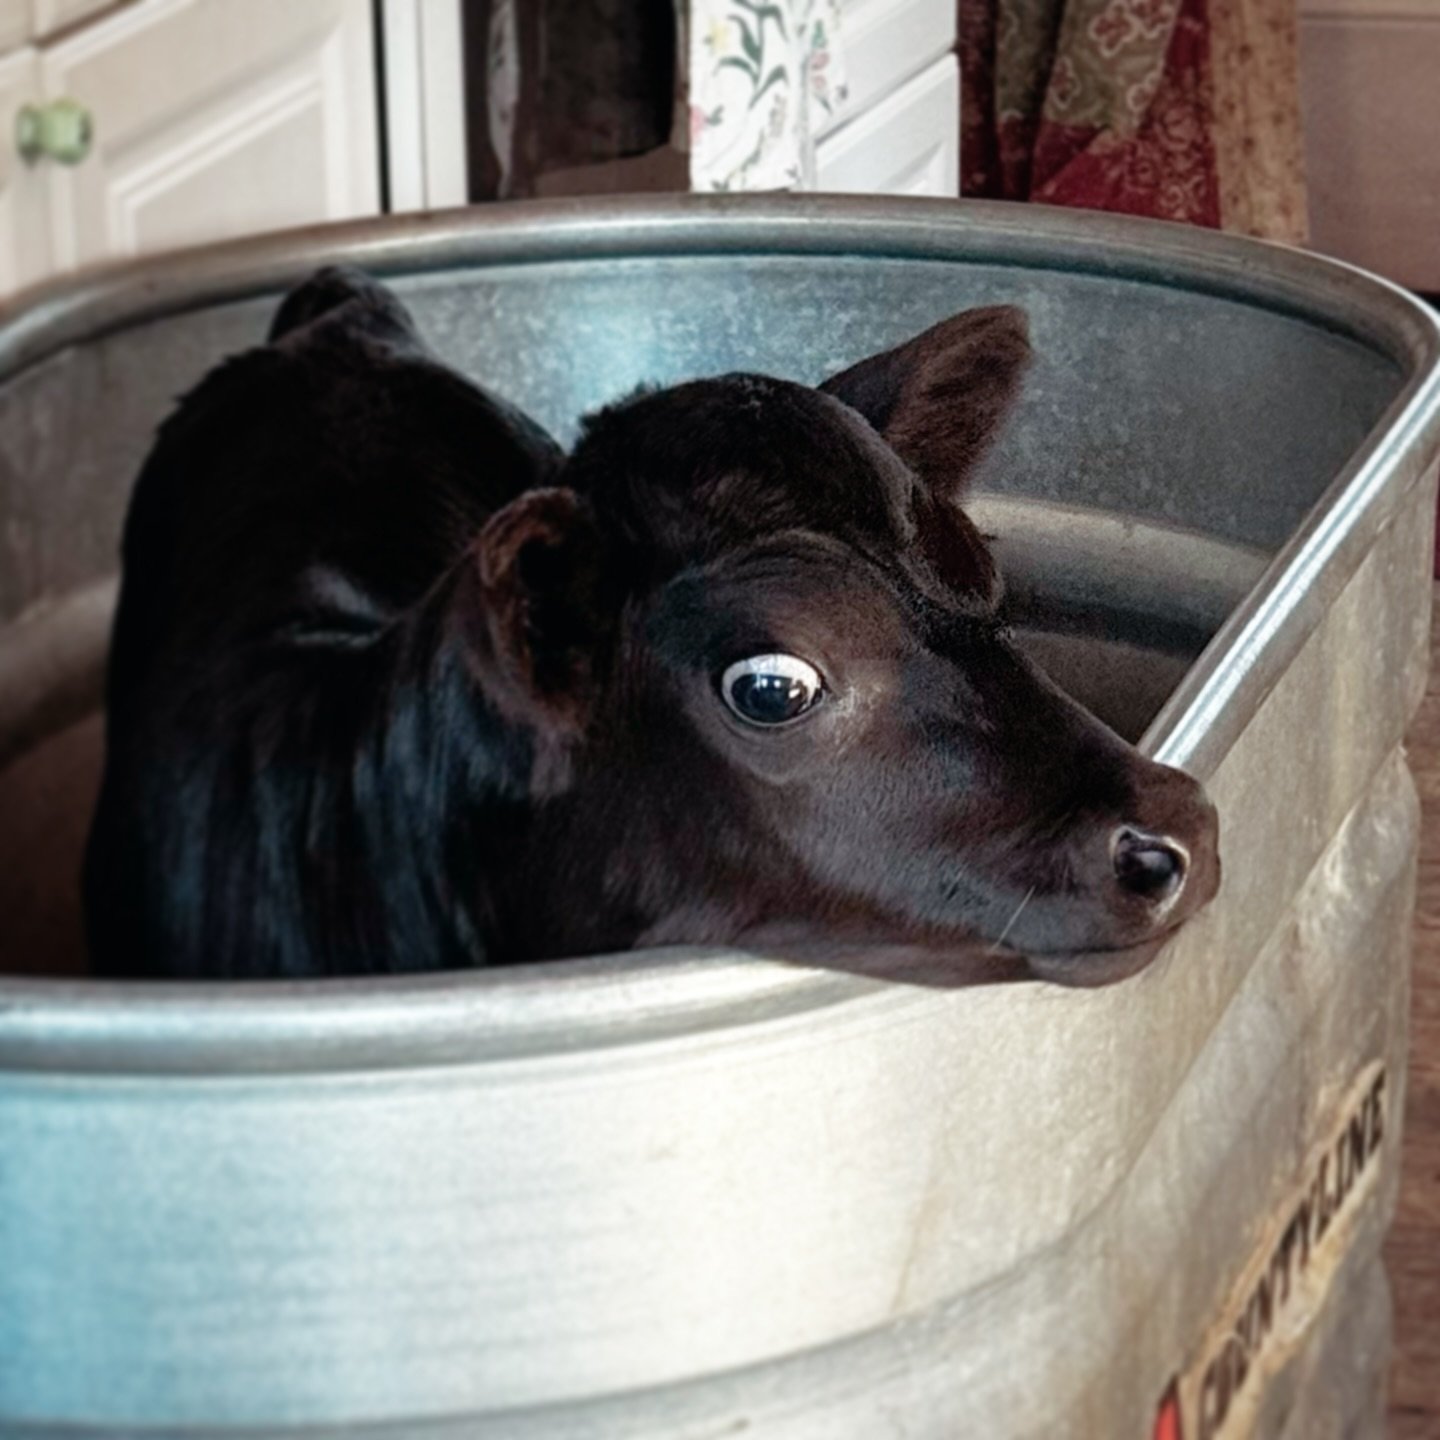 Kitchen cow. 

#kitchencow 
#calf
#blackcow
#weecoo 
#weemoo
#moo
#farmstead
#homestead
#broadforkvt